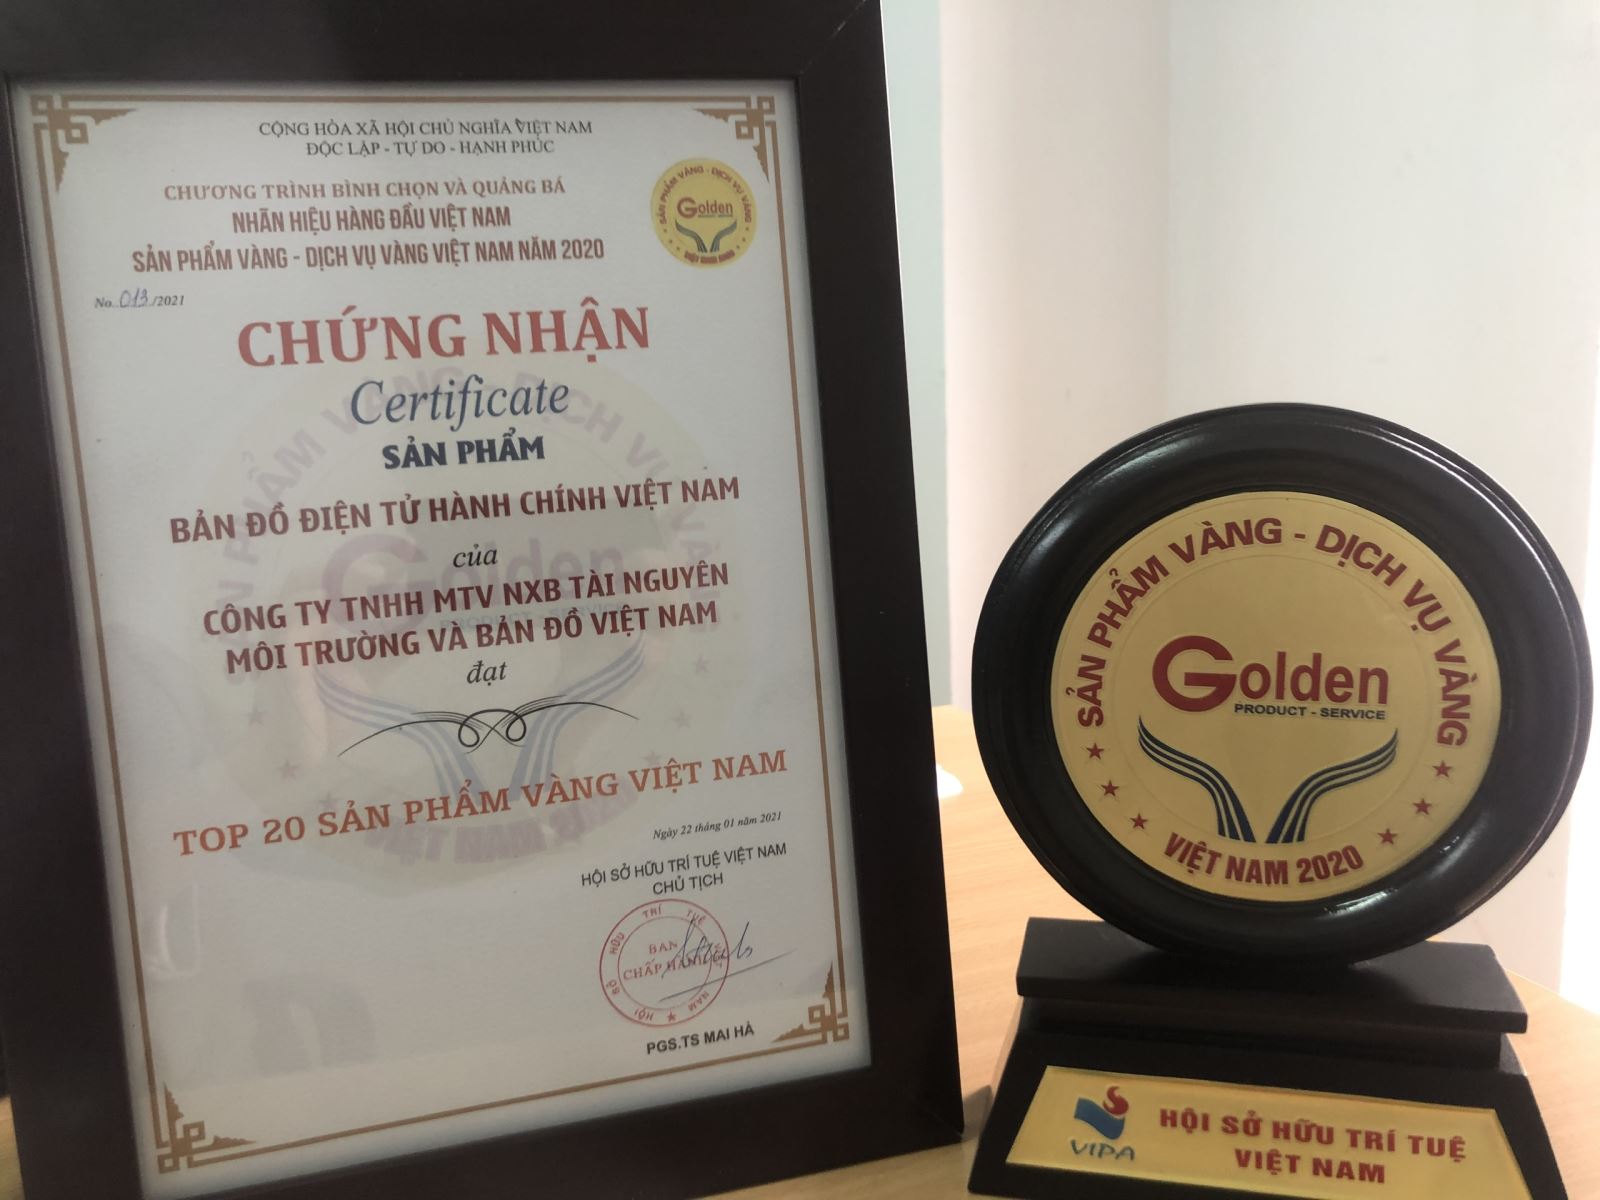 NXB Tài nguyên – Môi trường và Bản đồ Việt Nam nhận danh hiệu Top 20 Sản phẩm vàng Việt Nam năm 2020